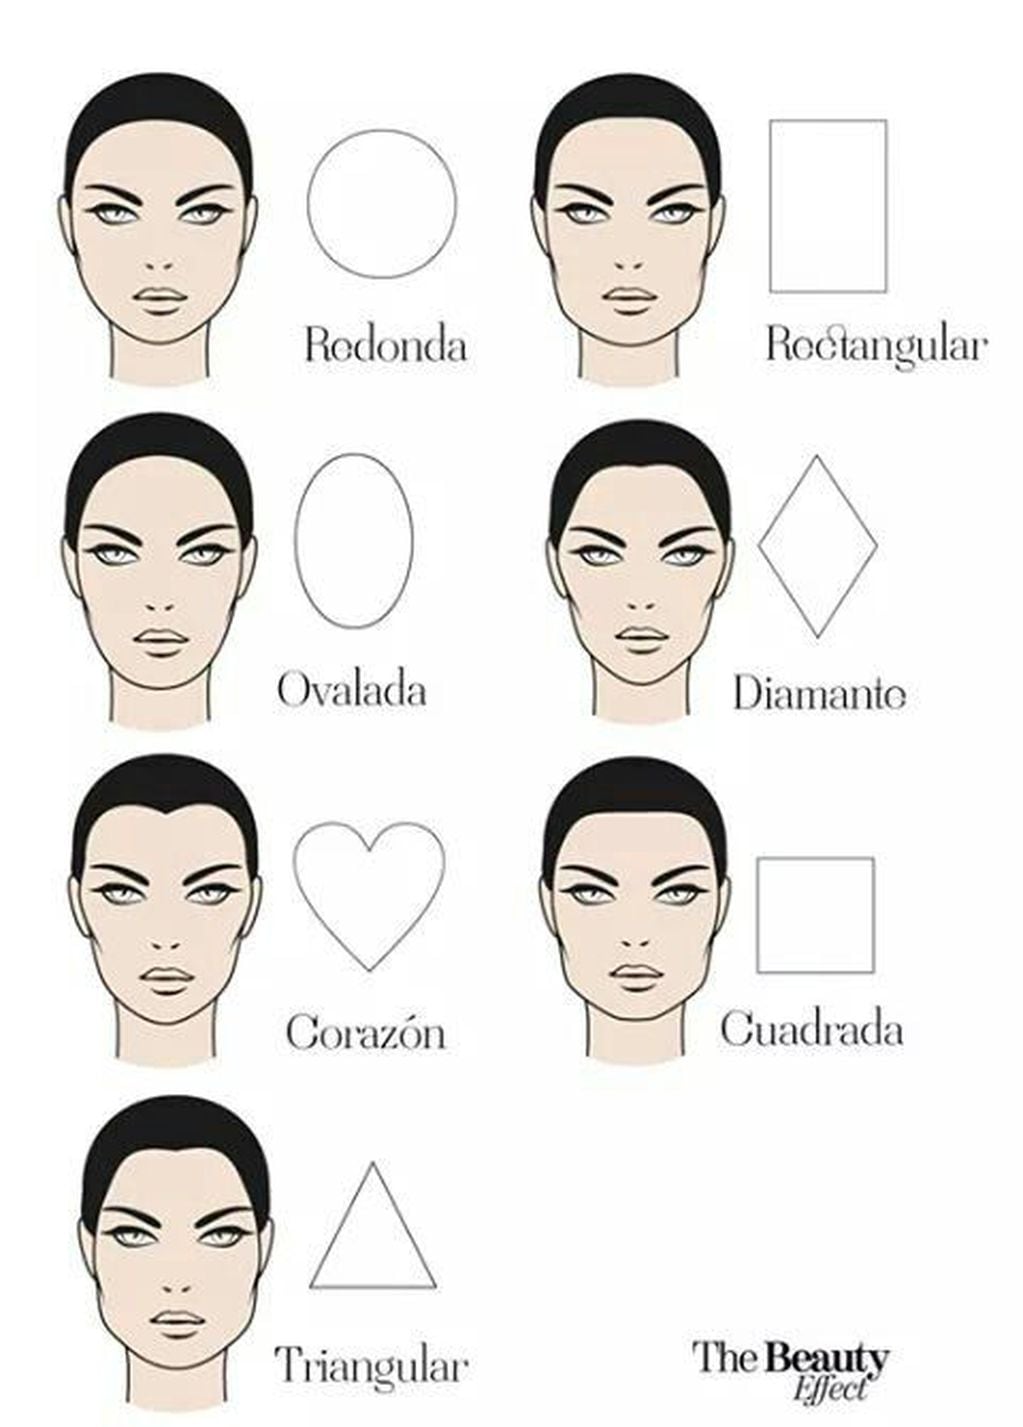 Existen diferentes tipos de rostros, pero estos suelen ser los más comunes.